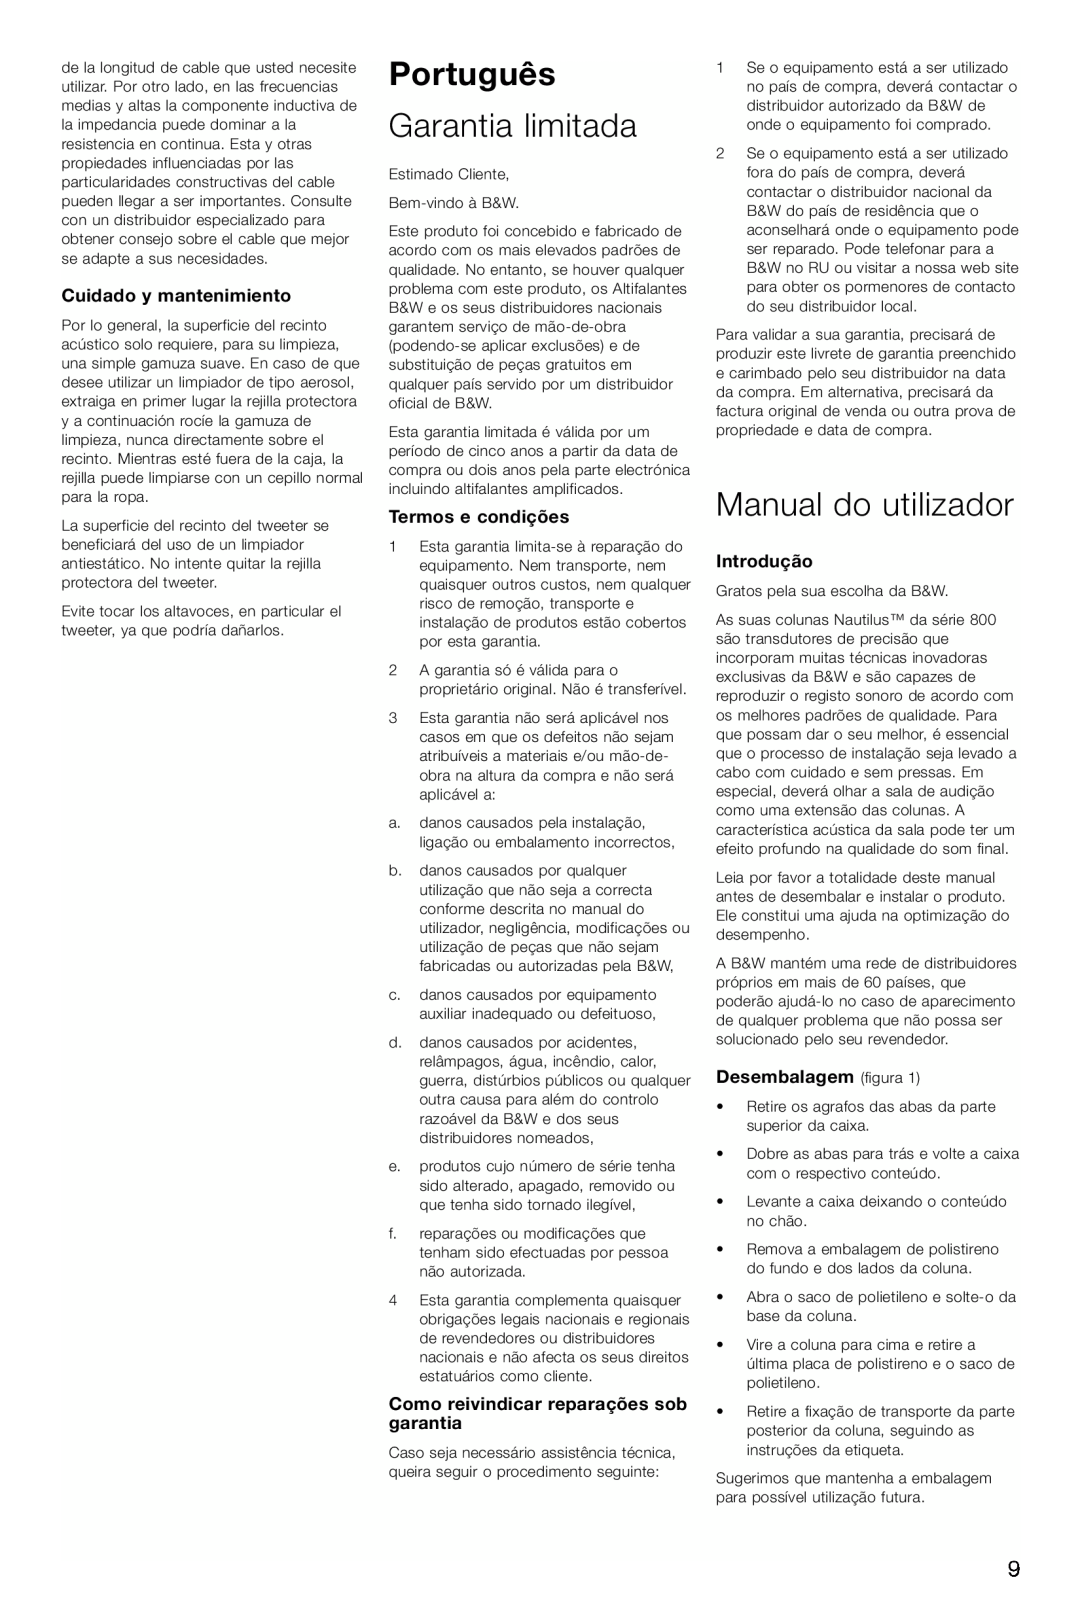 Bowers & Wilkins 804, 803 Português, Garantia limitada, Manual do utilizador, Cuidado y mantenimiento, Termos e condições 